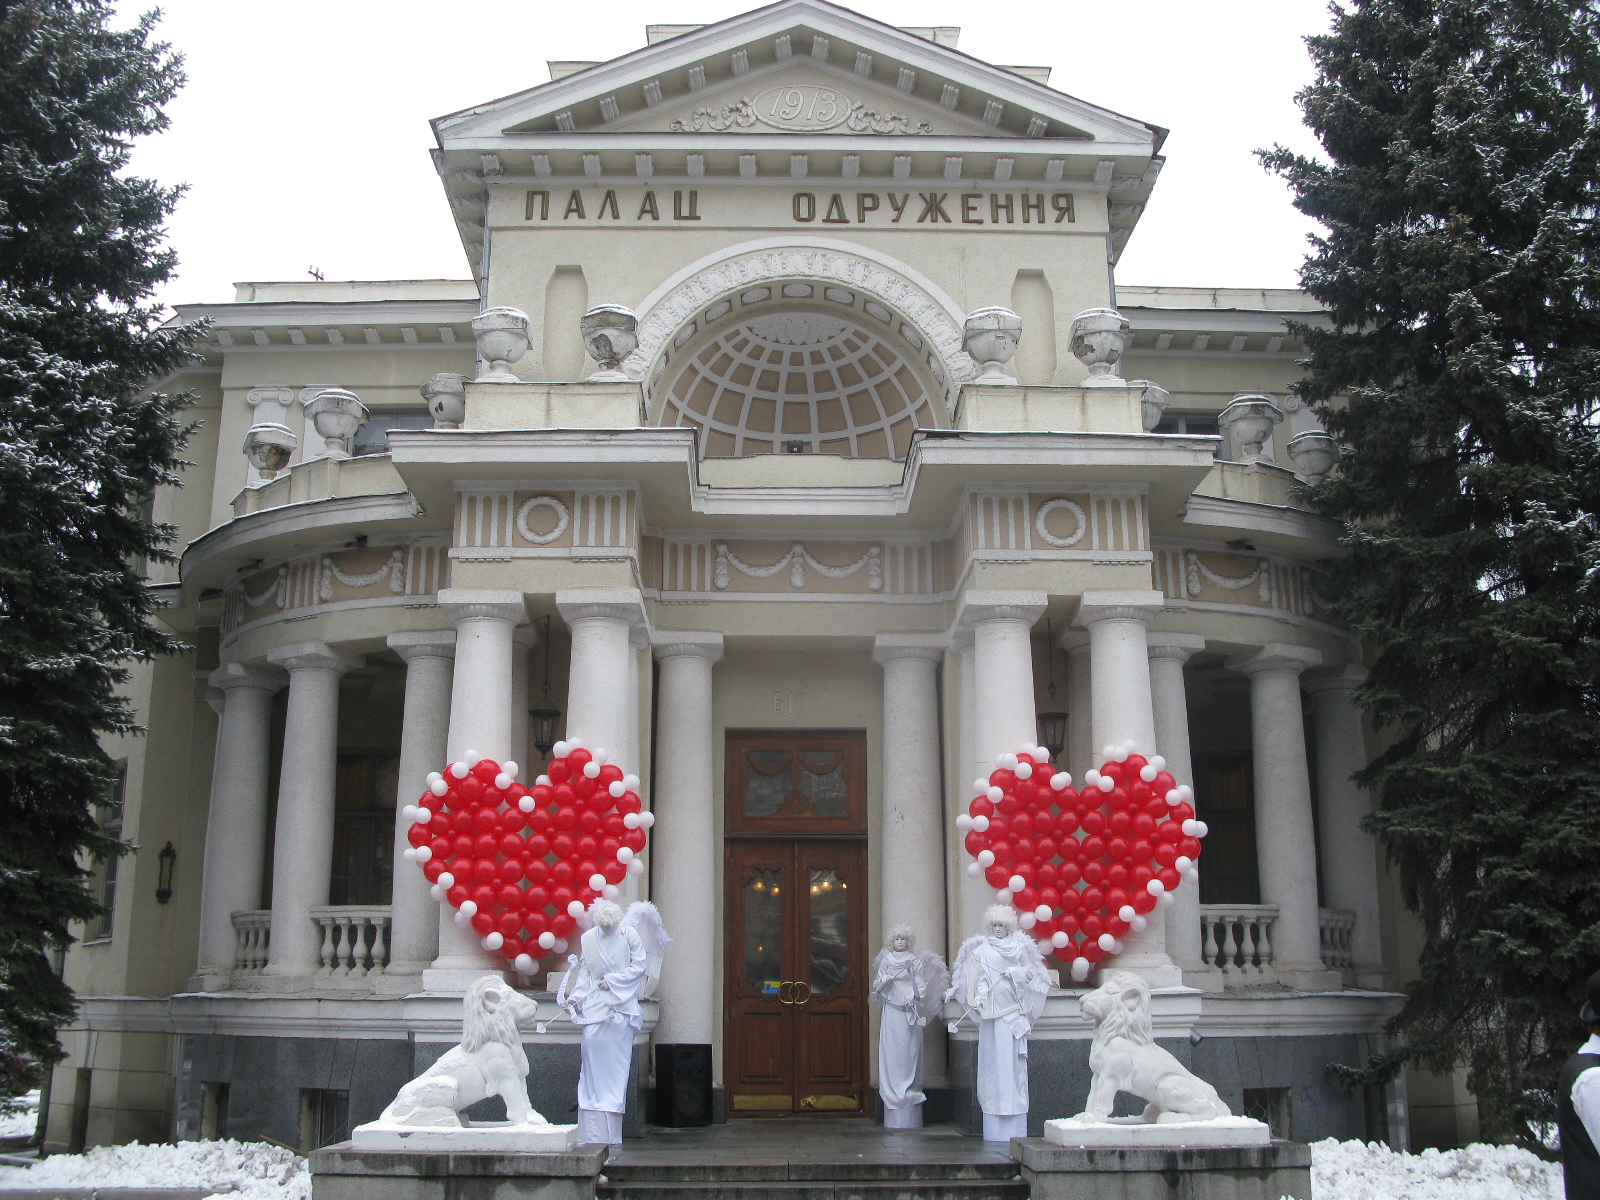 До Дня закоханих Палац одруження тематично прикрасили: на колонах розмістили два великих серця з повітряних куль, а на вході гостей зустрічали аніматори в костюмах Купідон